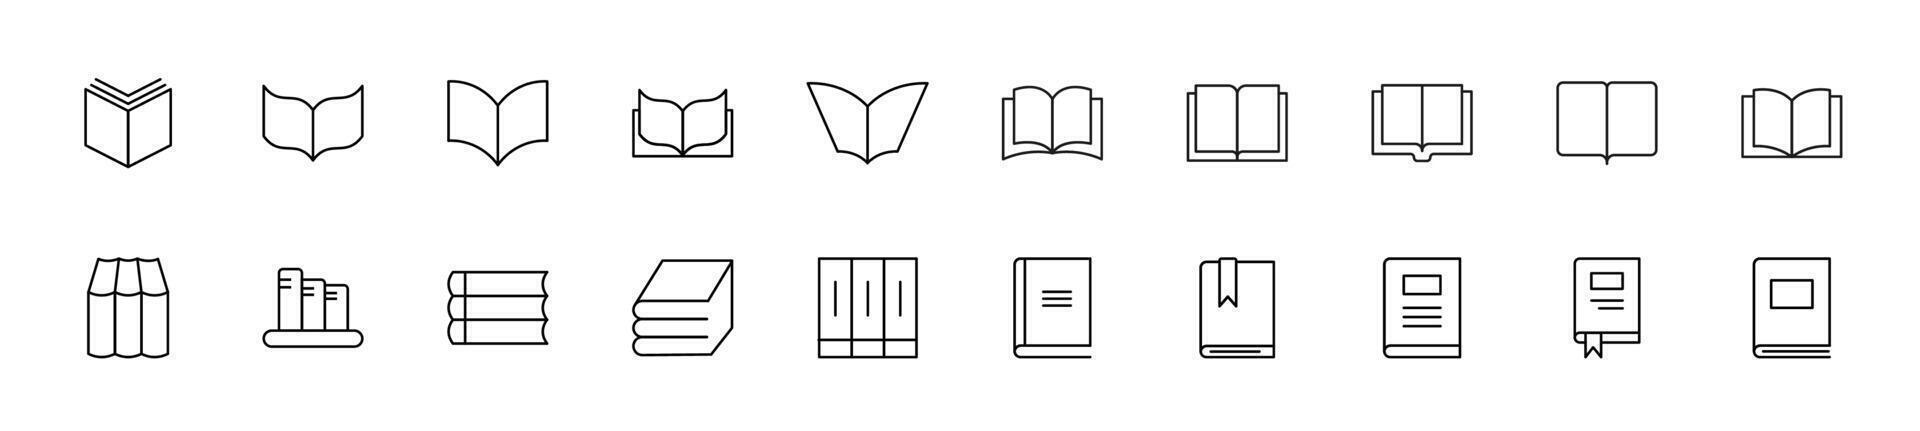 collezione di magro linea icone di libri come simbolo di studia. lineare cartello e modificabile ictus. adatto per ragnatela siti, libri, articoli vettore